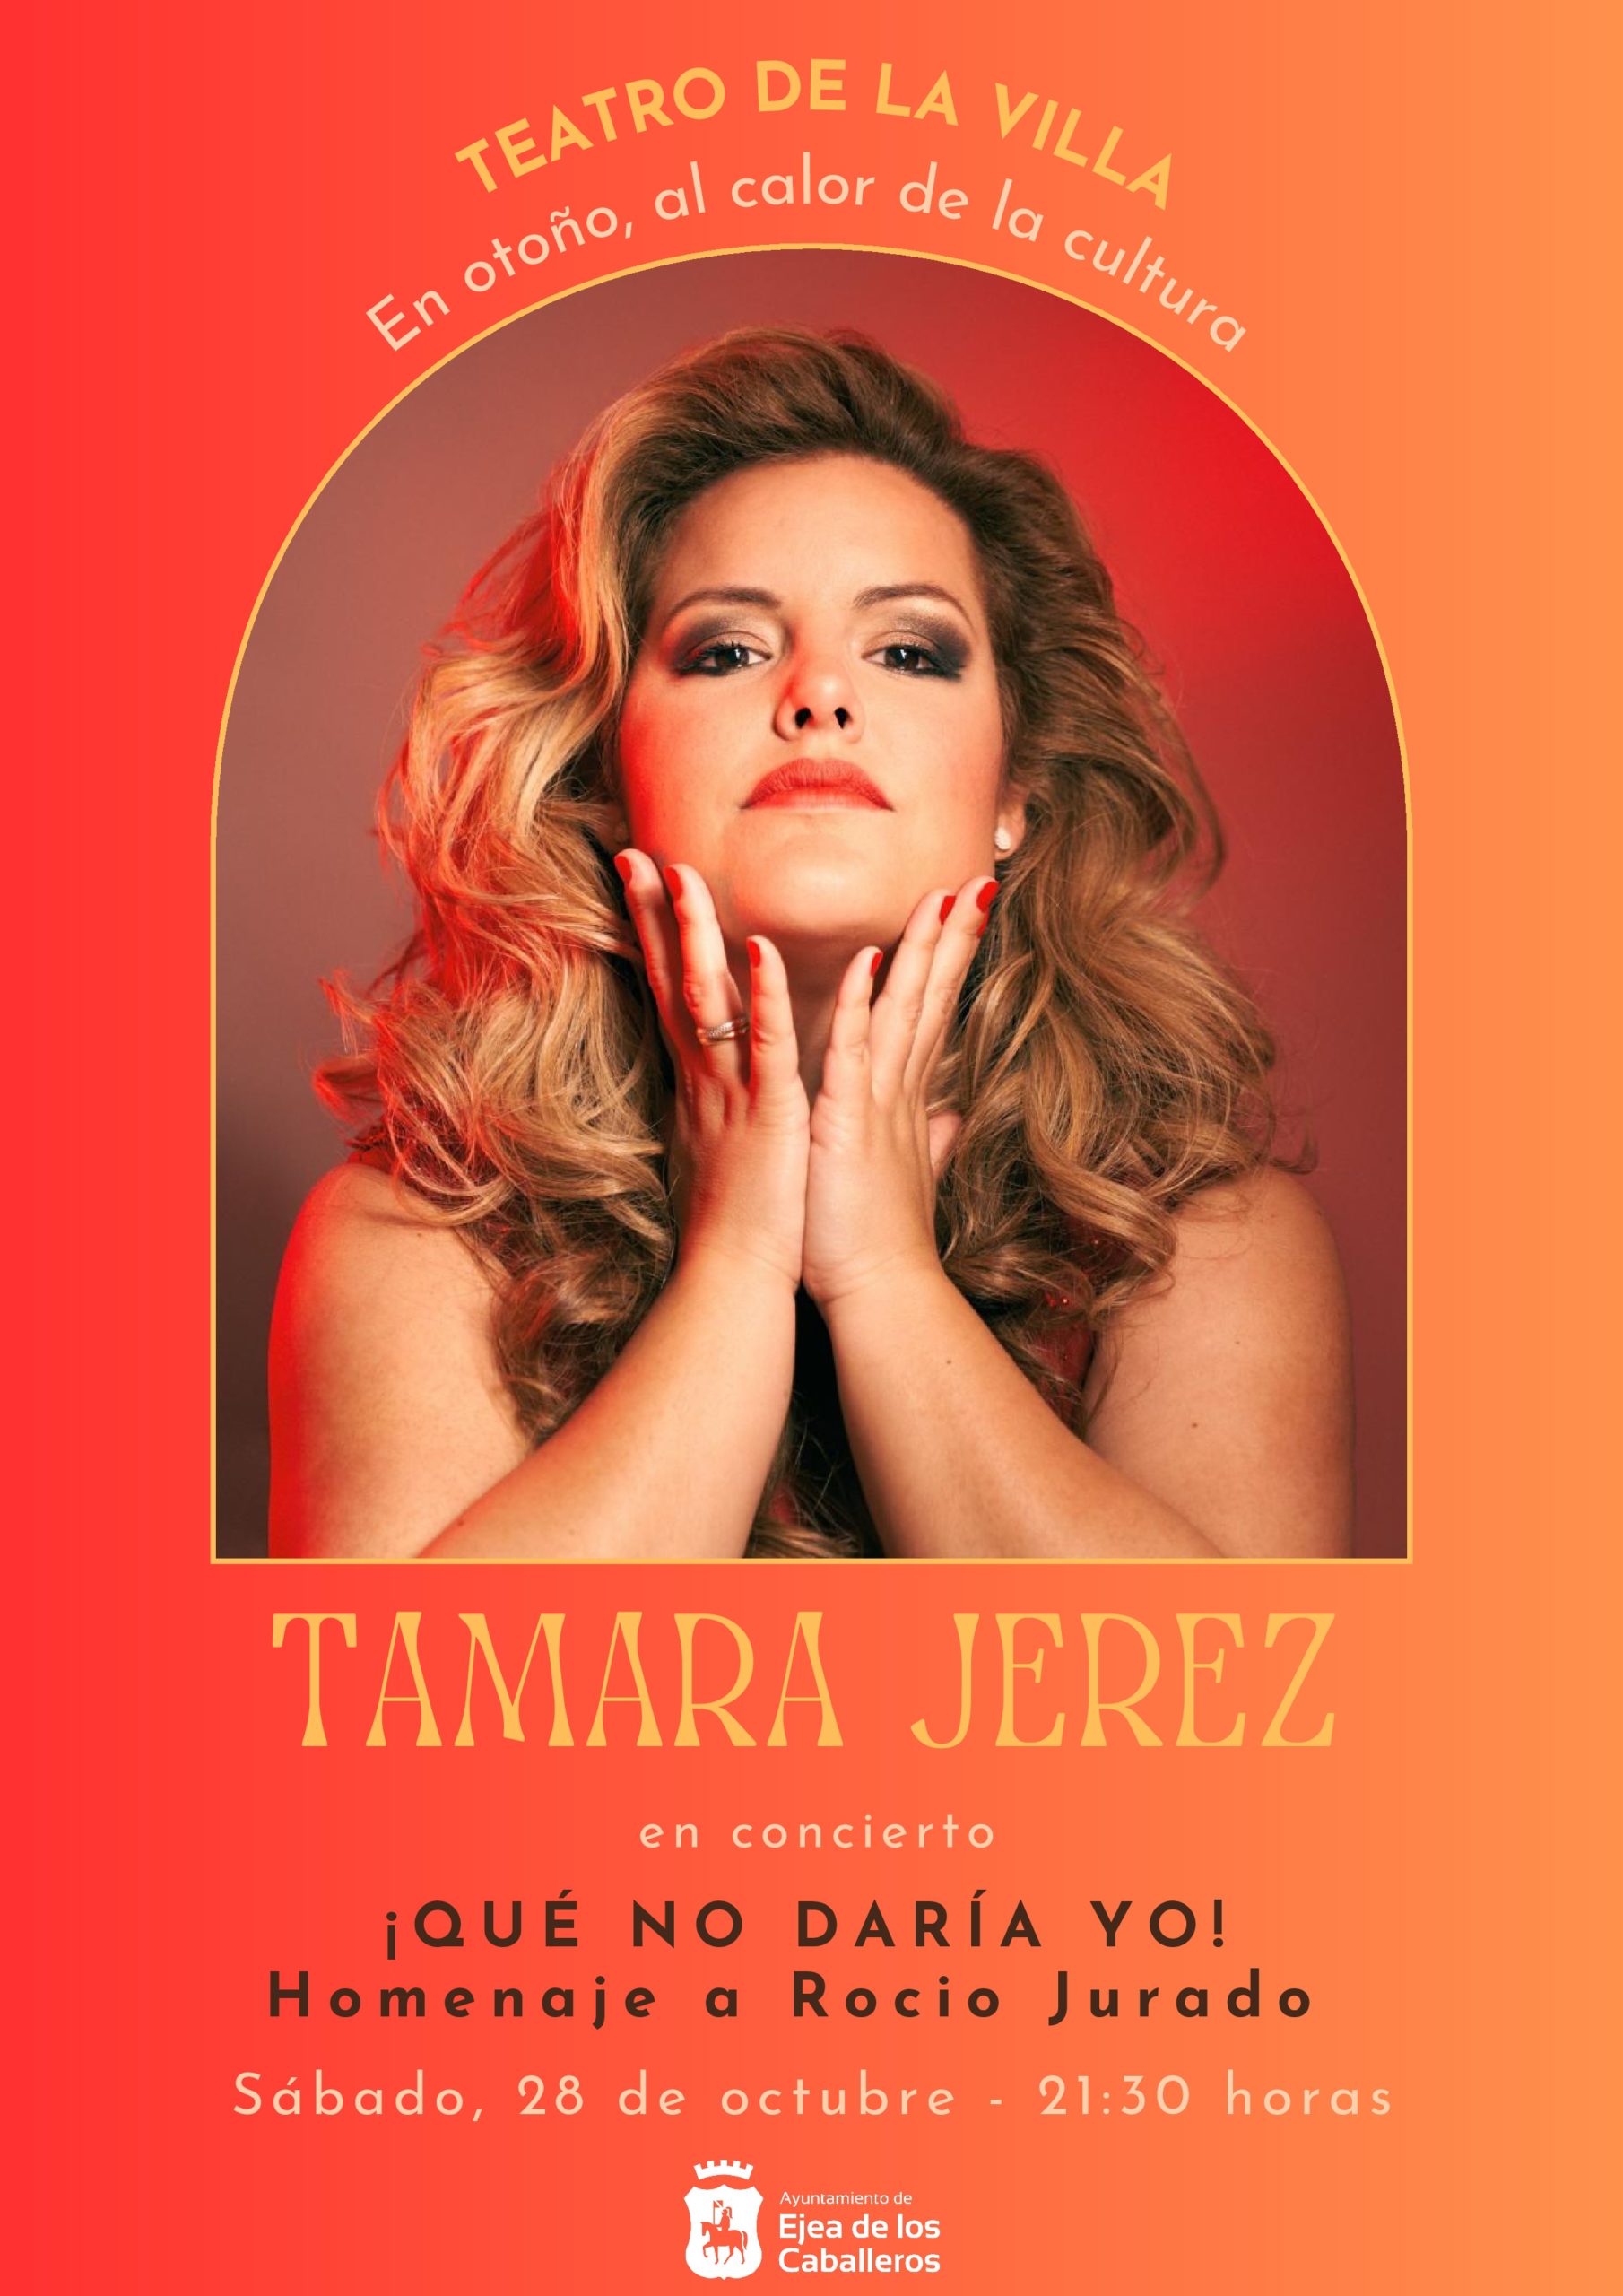 En este momento estás viendo Qué no daría yo”, un concierto de Tamara Jerez en homenaje a Rocío Jurado